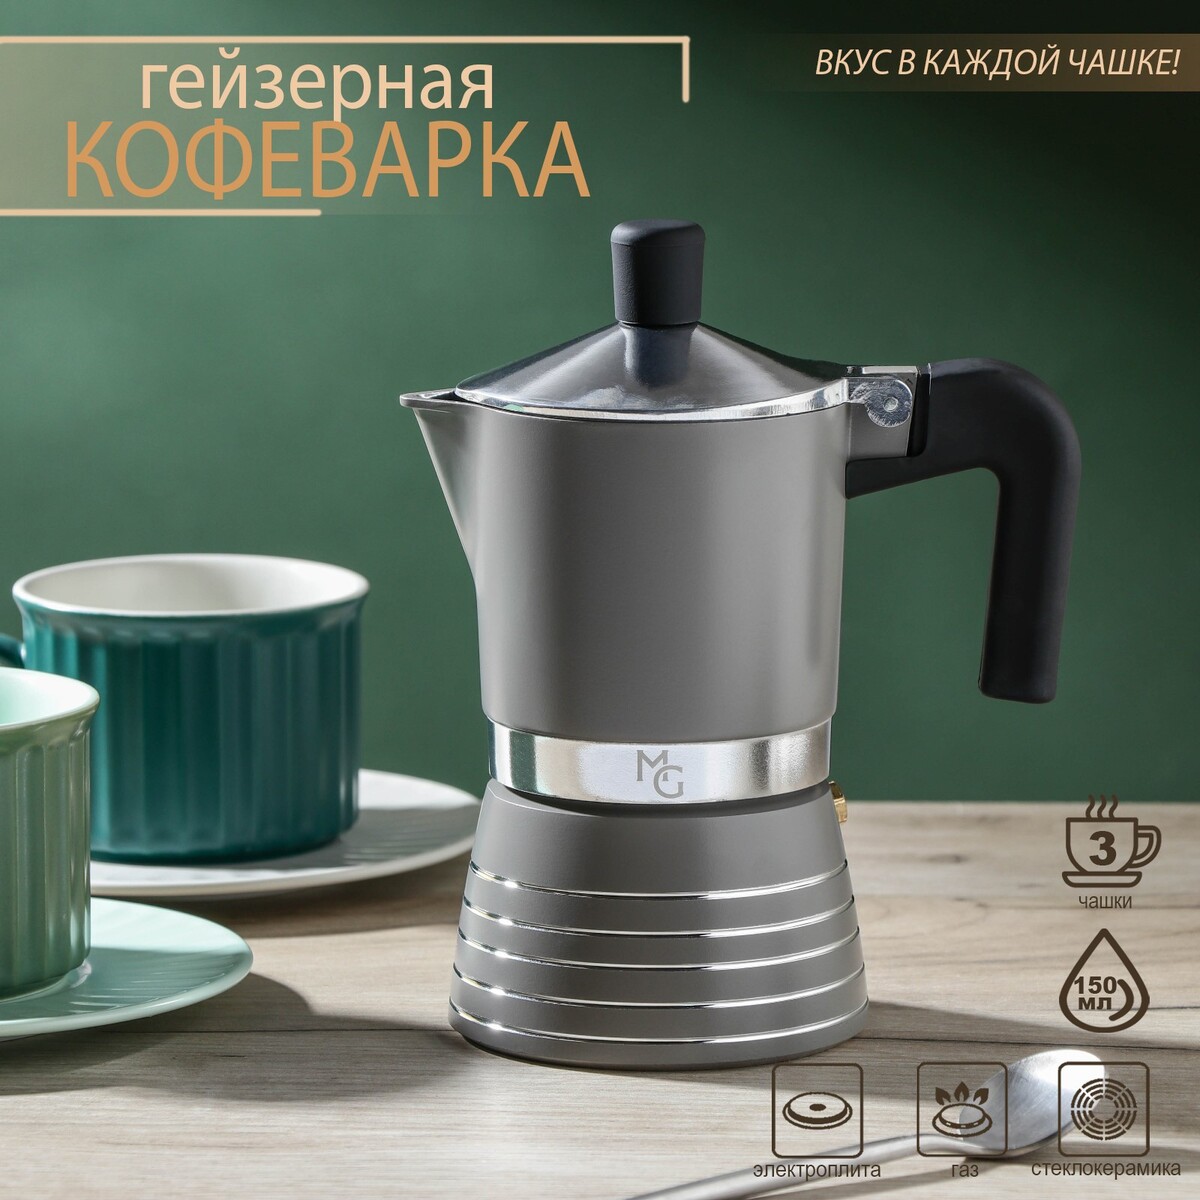 Кофеварка гейзерная magistro moka, на 3 чашки, 150 мл капитал из чашки кофе стратегия управления личными финансами